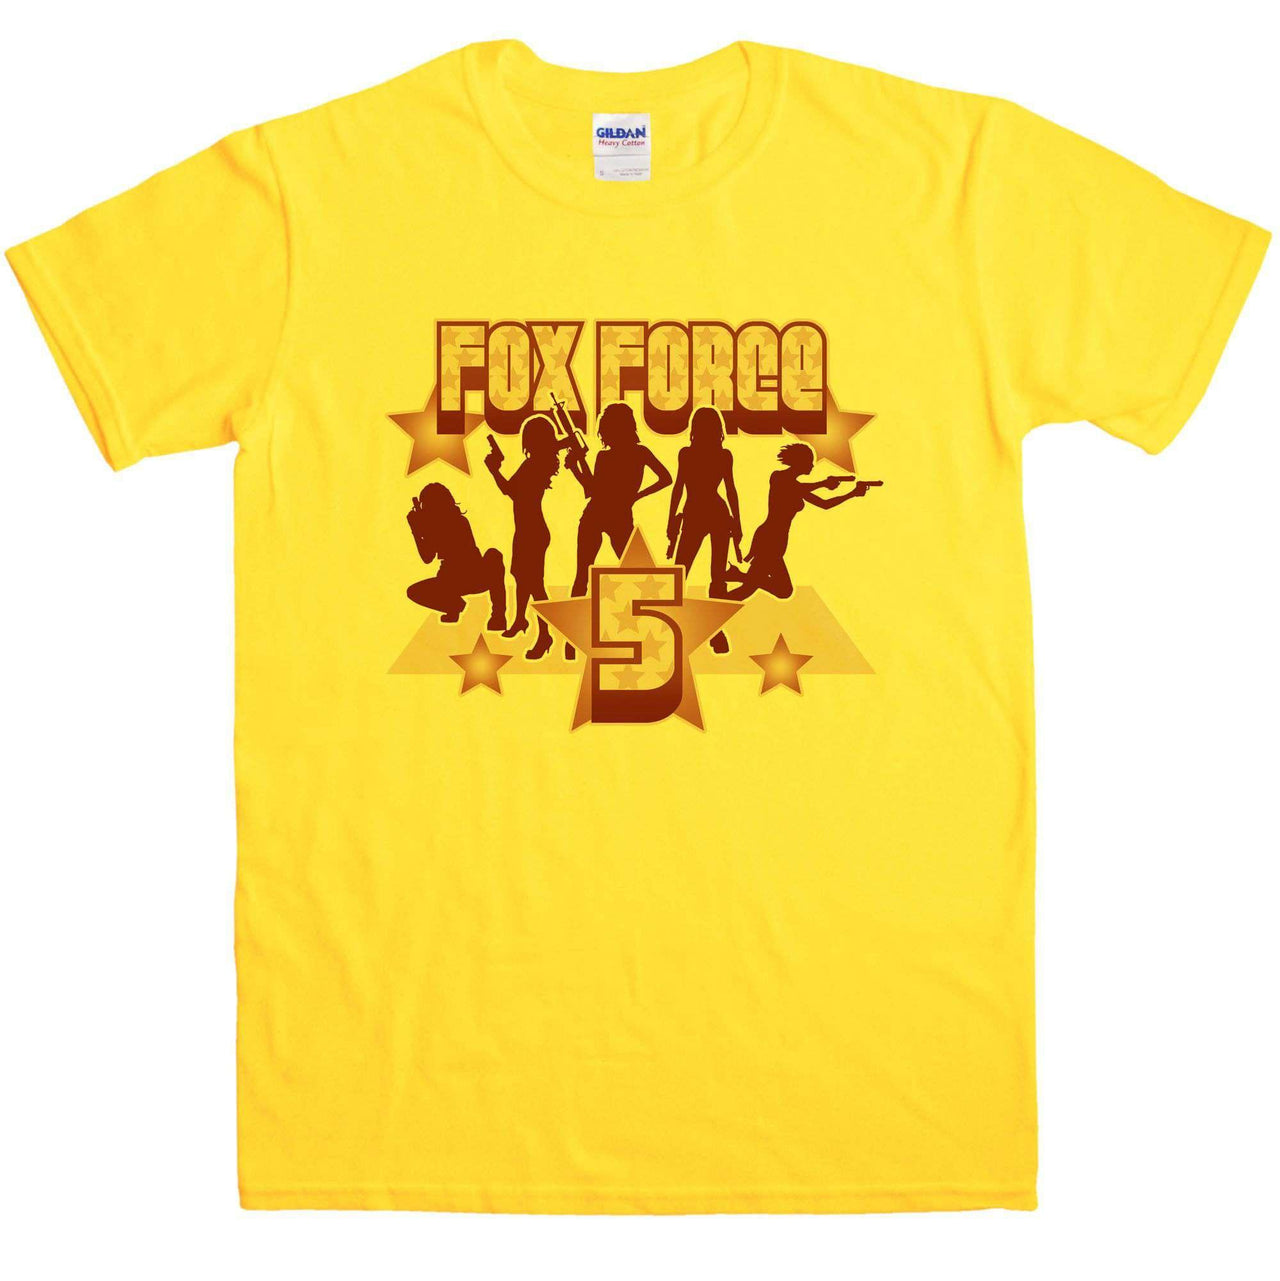 Fox Force Five Unisex T-Shirt 8Ball